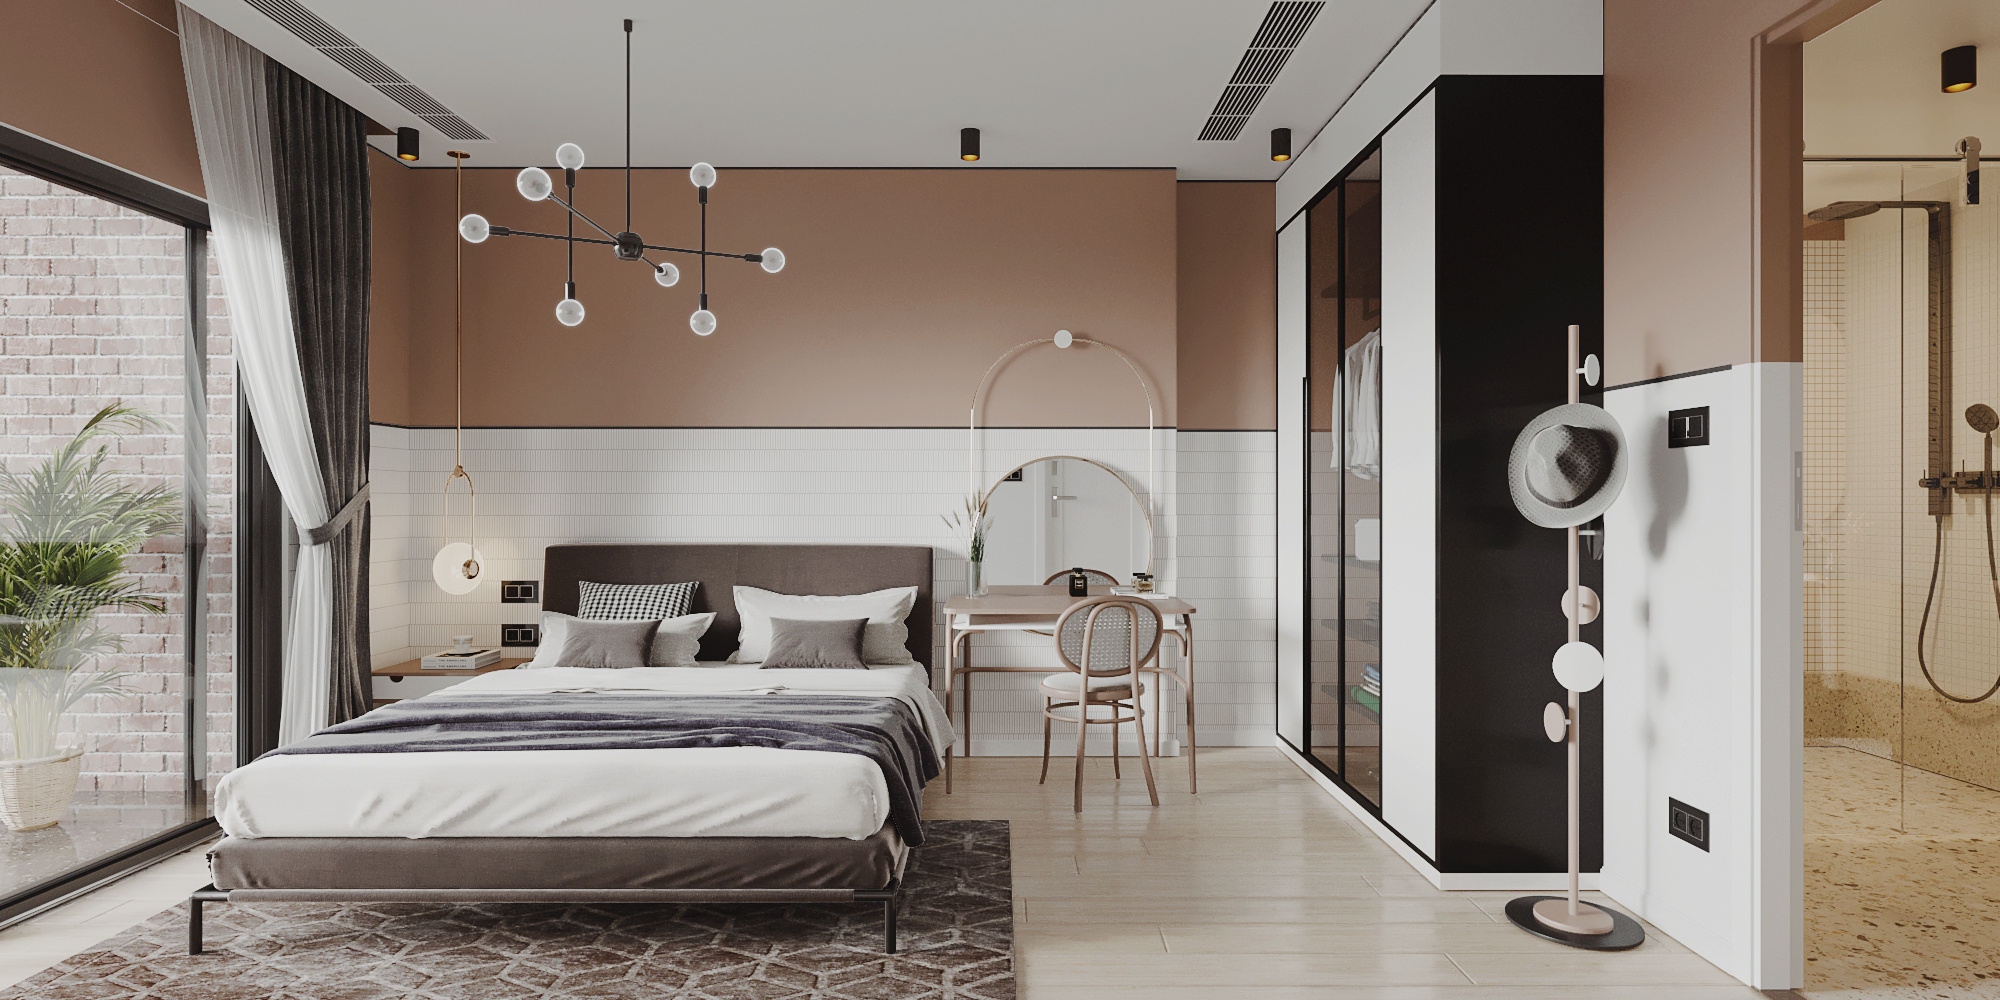 長臥室是很常見的戶型，以沉穩的奢雅顏色、簡潔的線條與材質，渲染出一片安寧之境，低調卻盡是優雅愜意，流露出歲月的寧靜